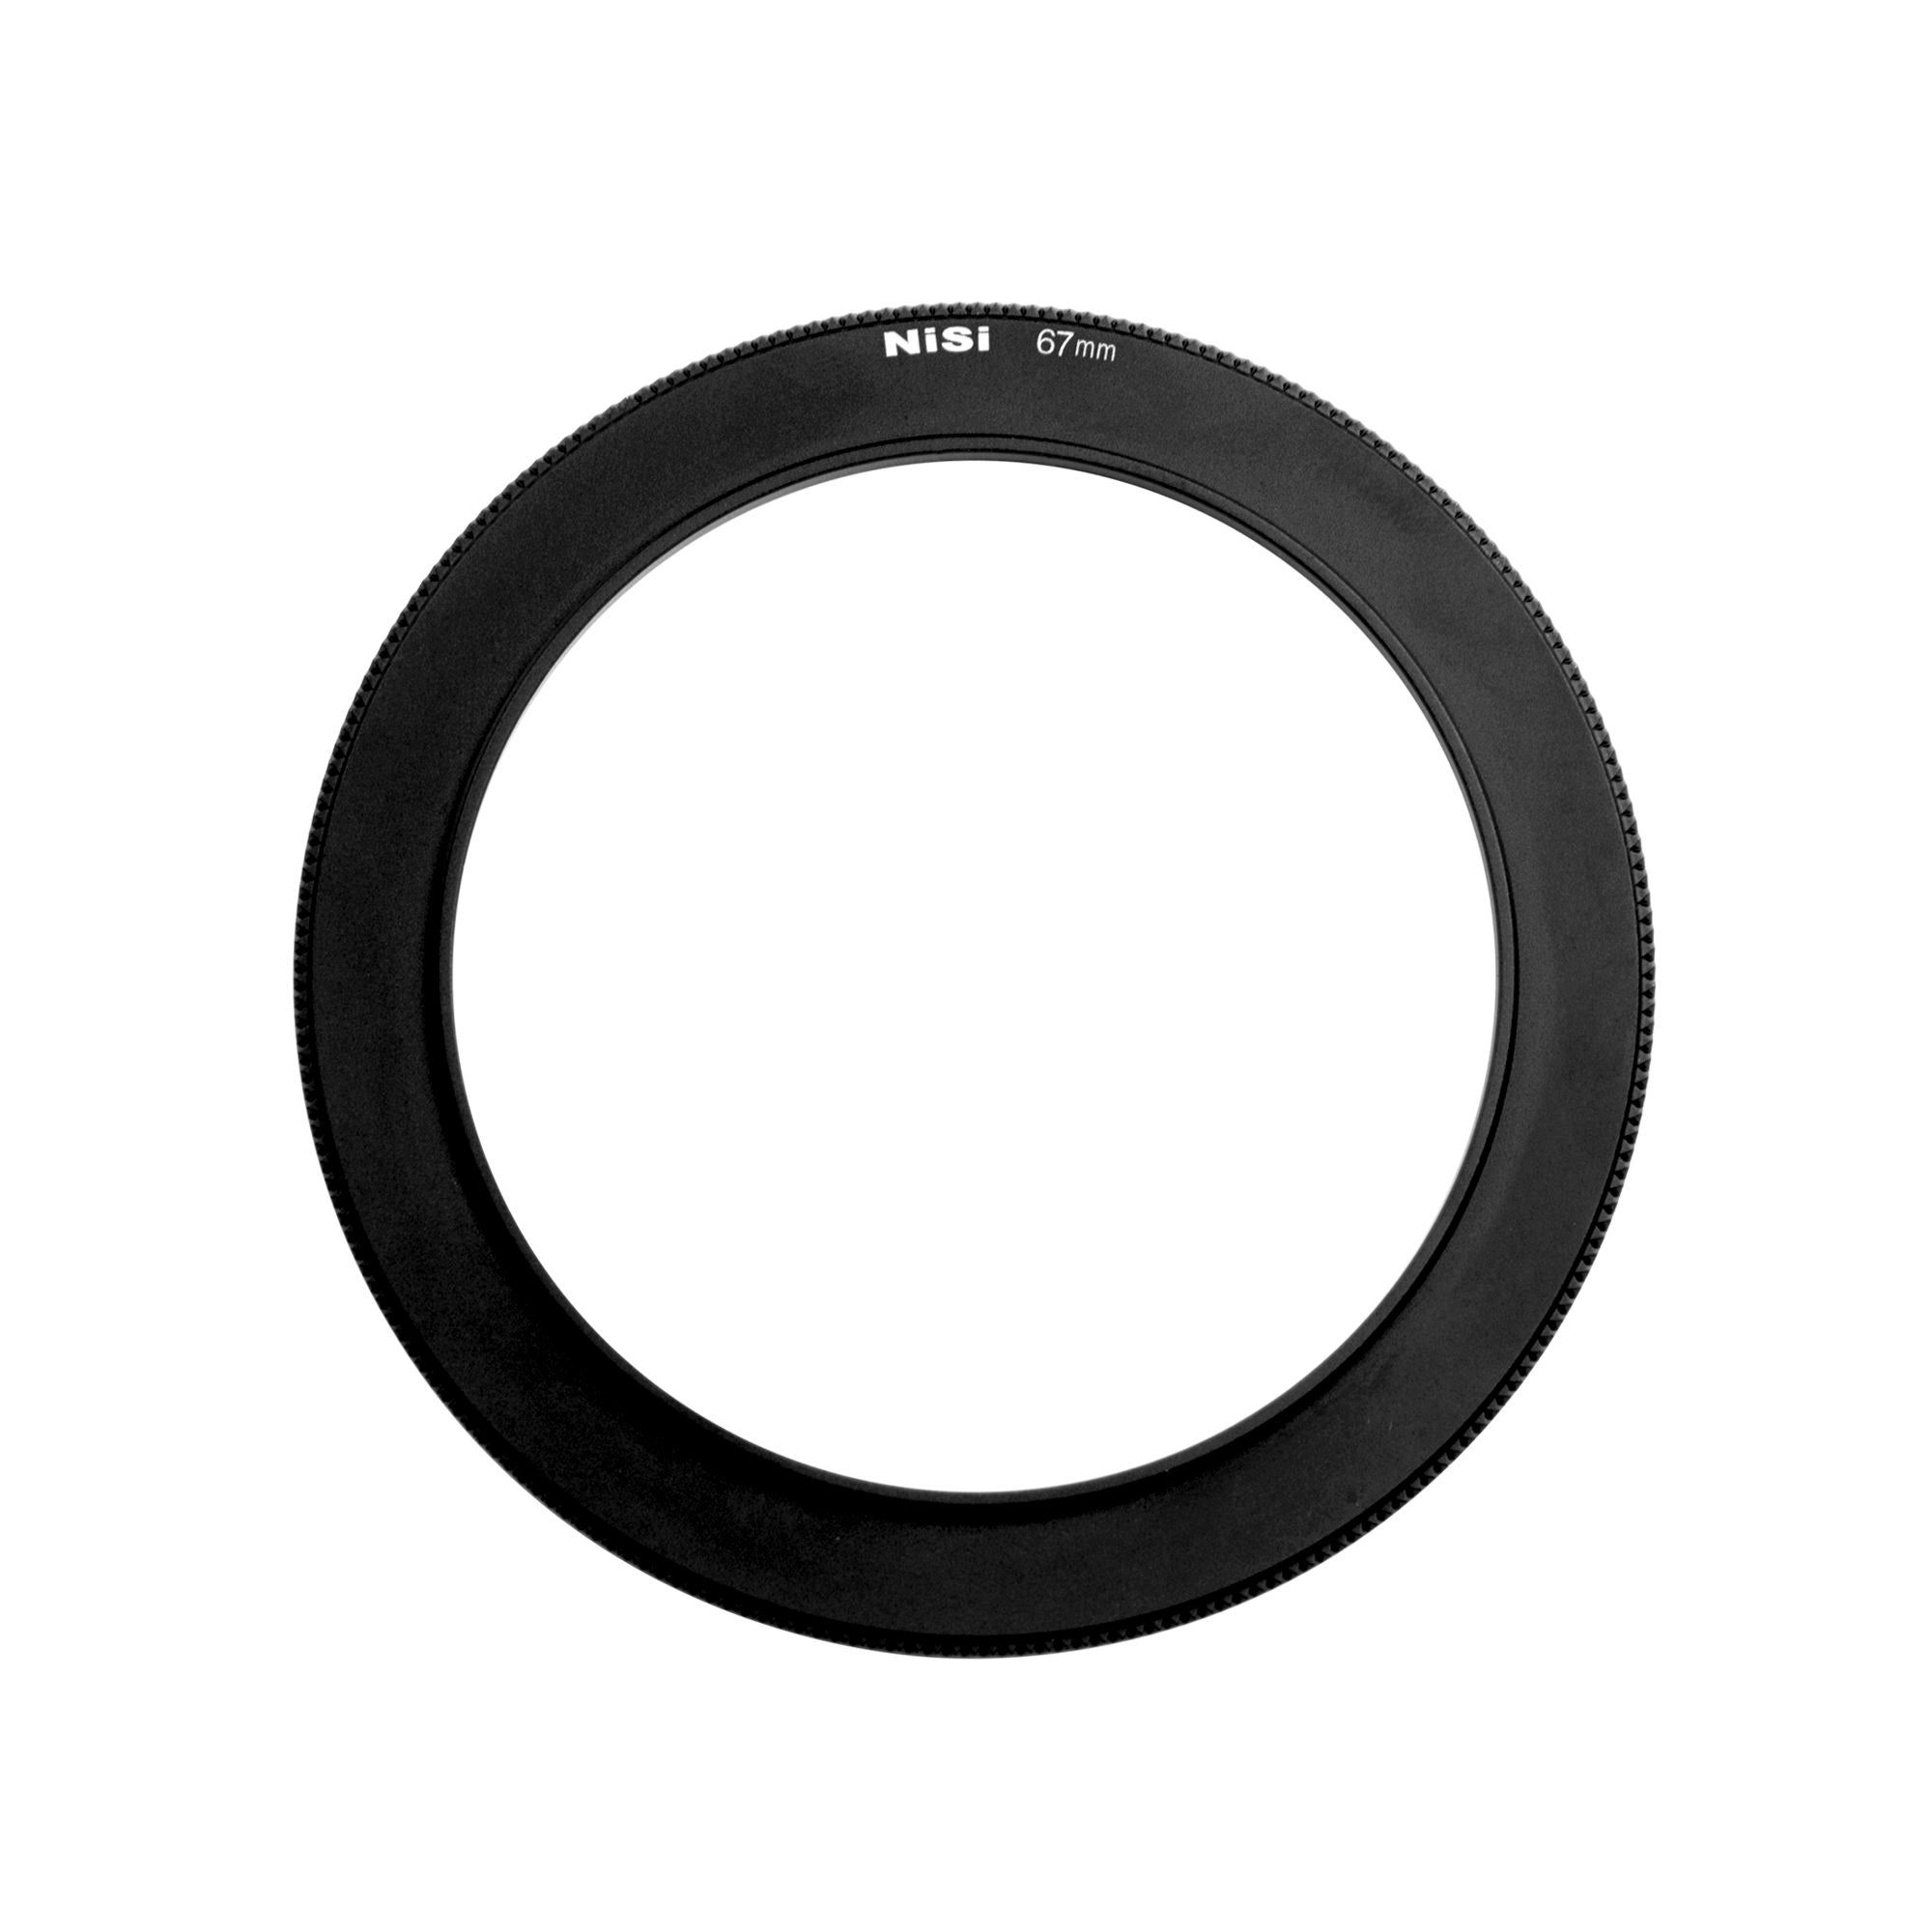 NiSi 67mm adaptor Ring  for NiSi 100mm V5-ALPHA/V5/V5 Pro/C4 Holder